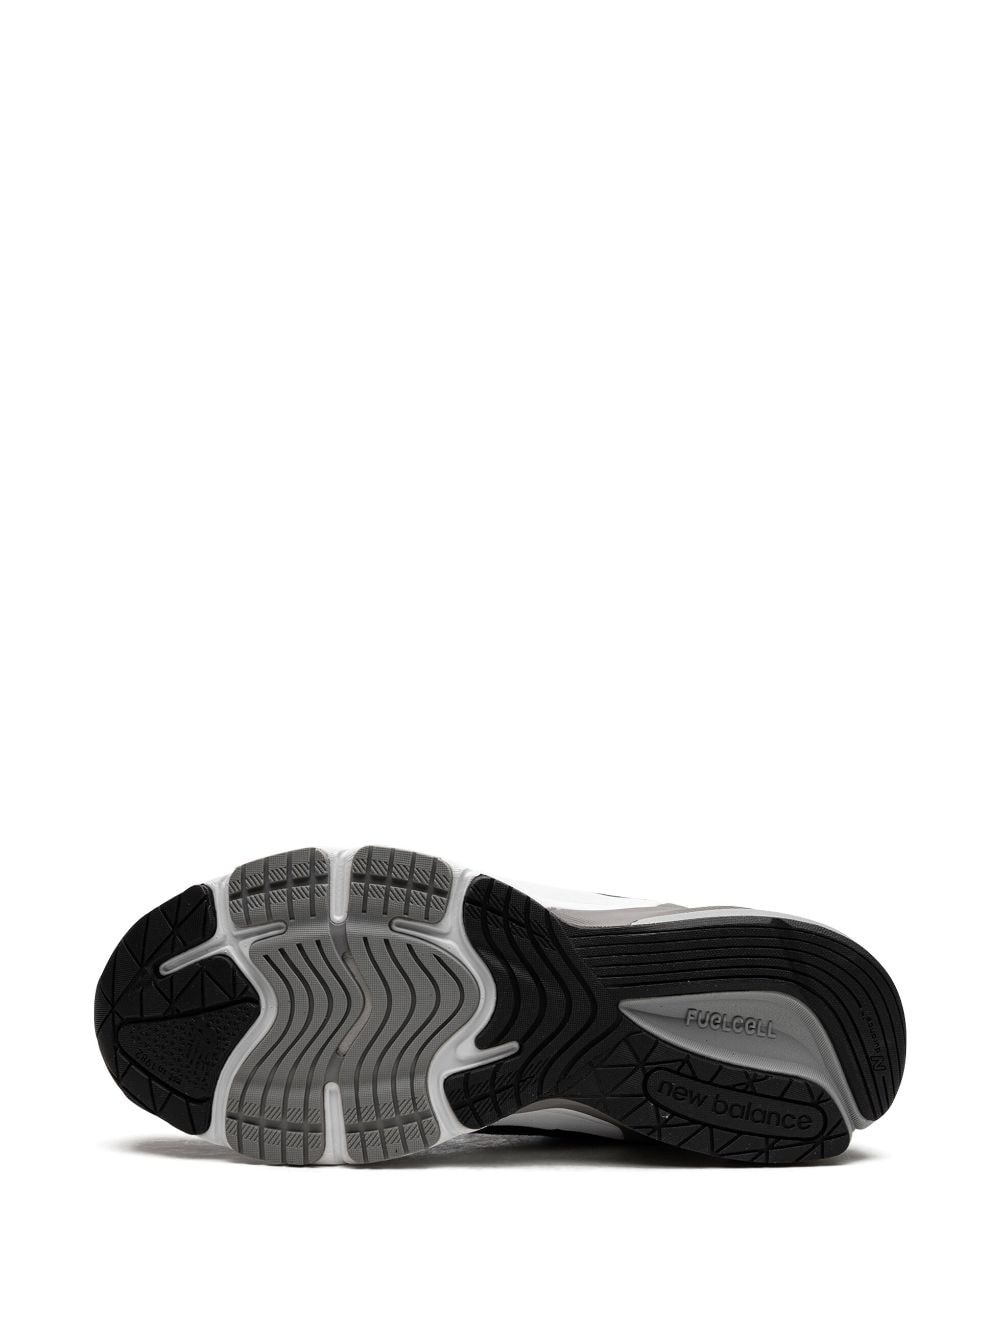 990v6 "Black/Silver" sneakers - 4